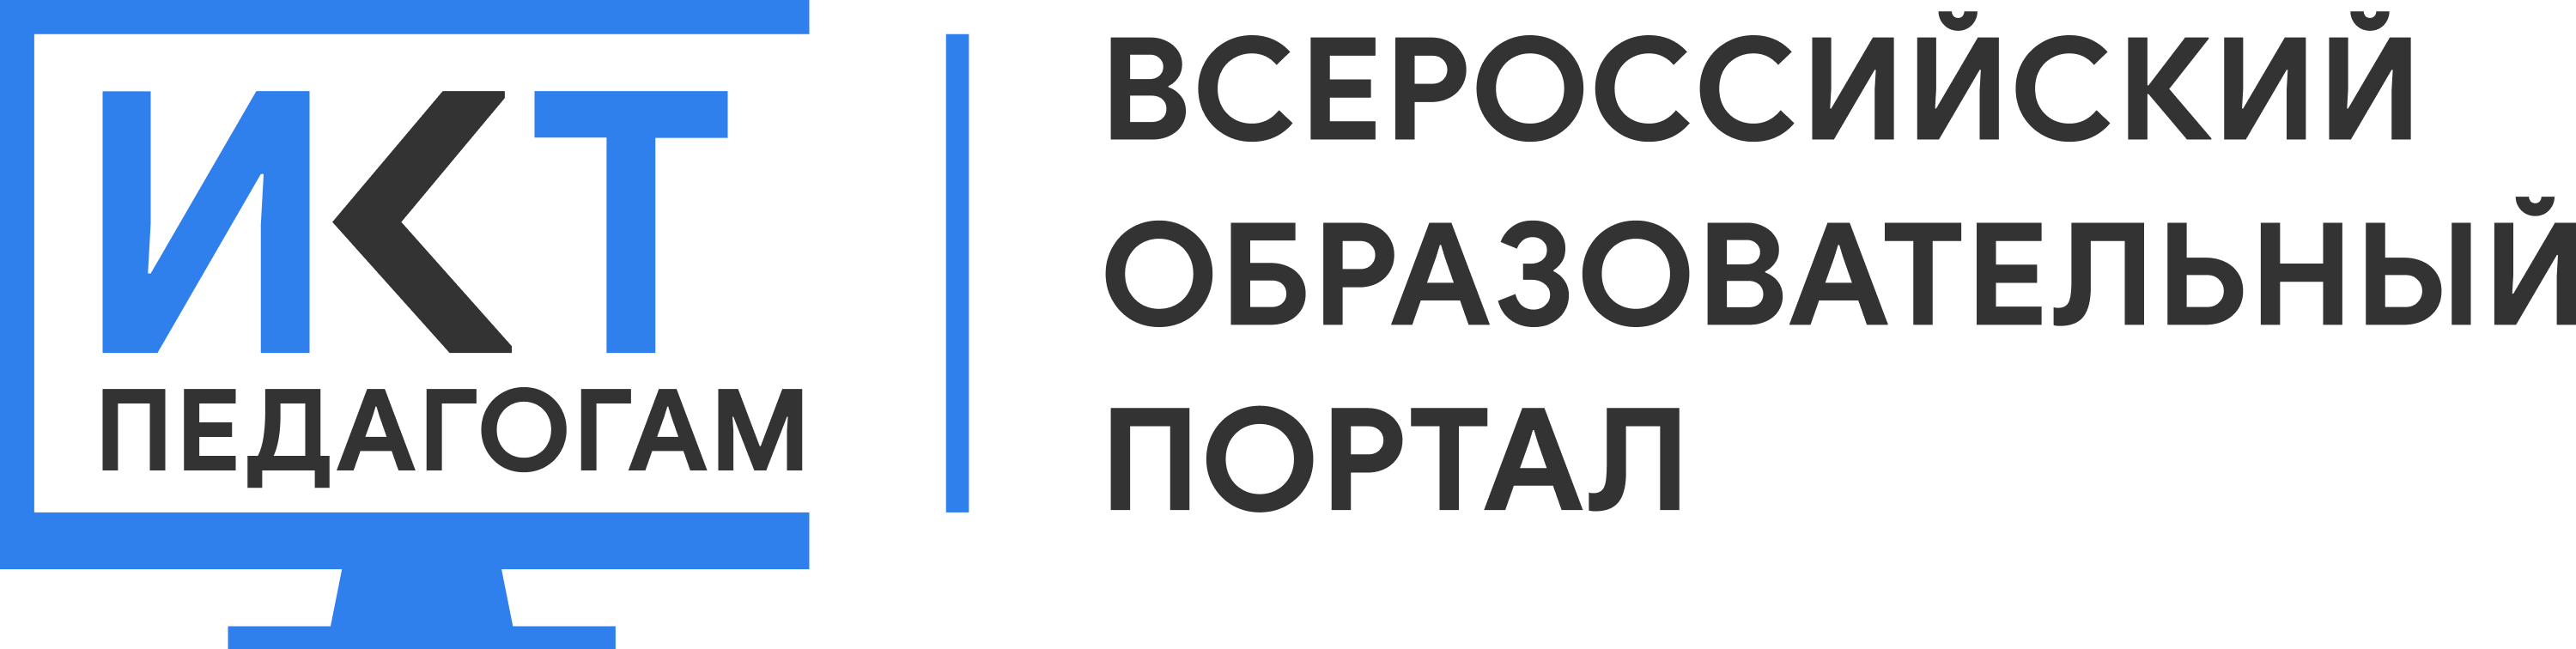 Всероссийский образовательный портал ИКТ. МЭО мобильное электронное образование. Логотип МЭО картинка. МЭО мобильное электронное образование логотип. Мэо электронная образования